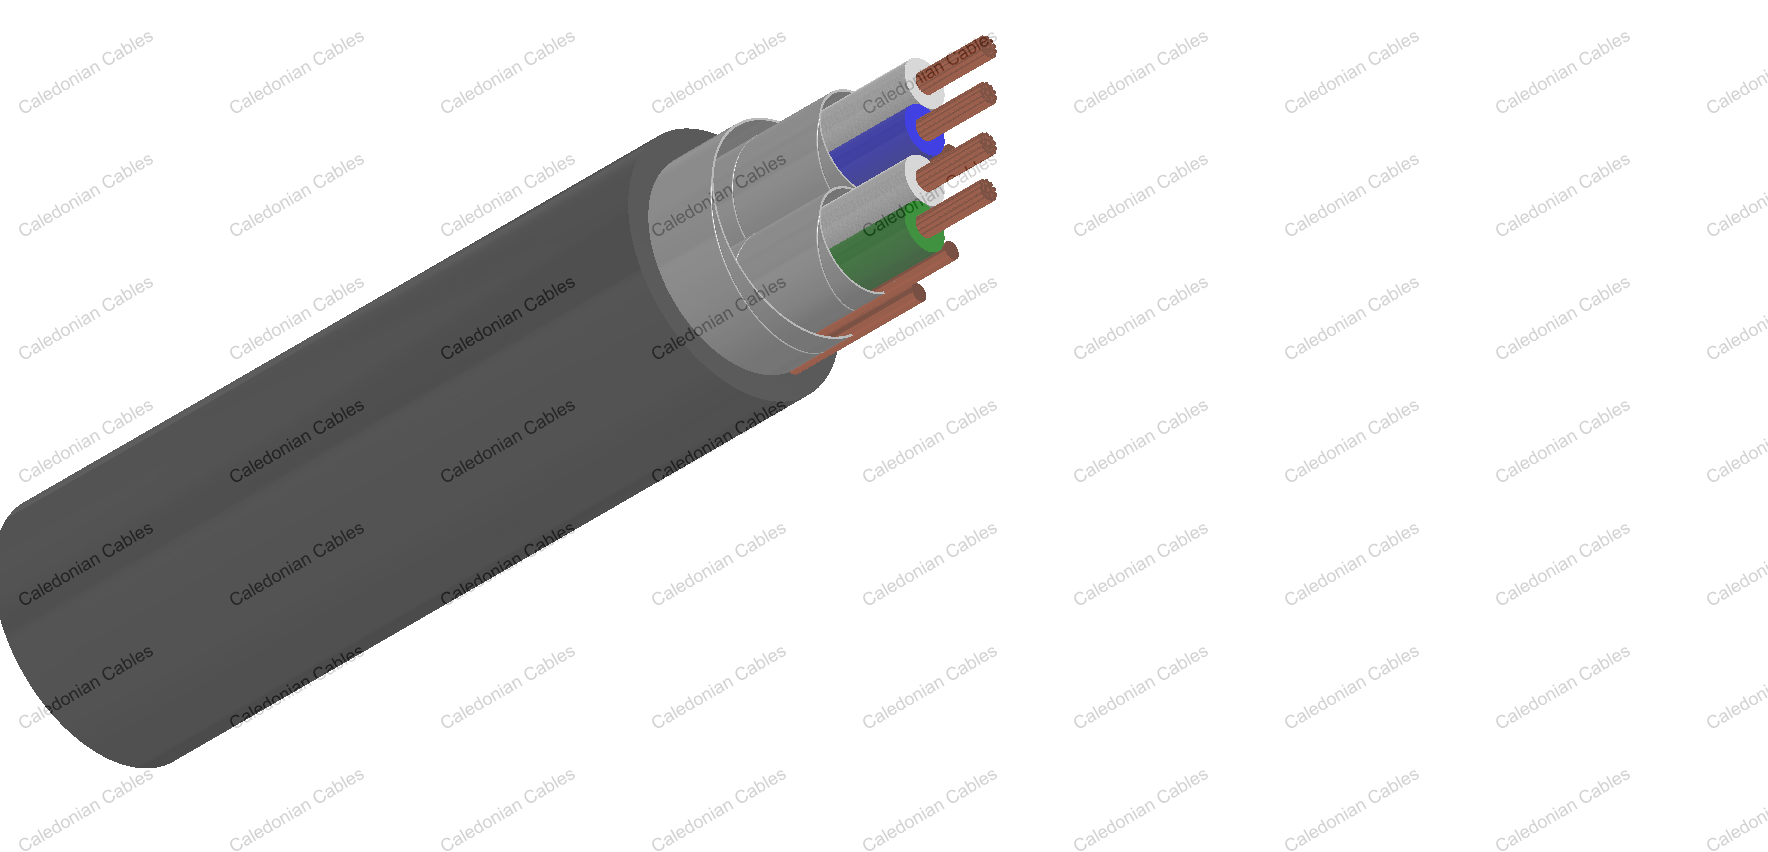 PAS 5308 Cable Part 2 Type 1 PVC-IS-OS-PVC